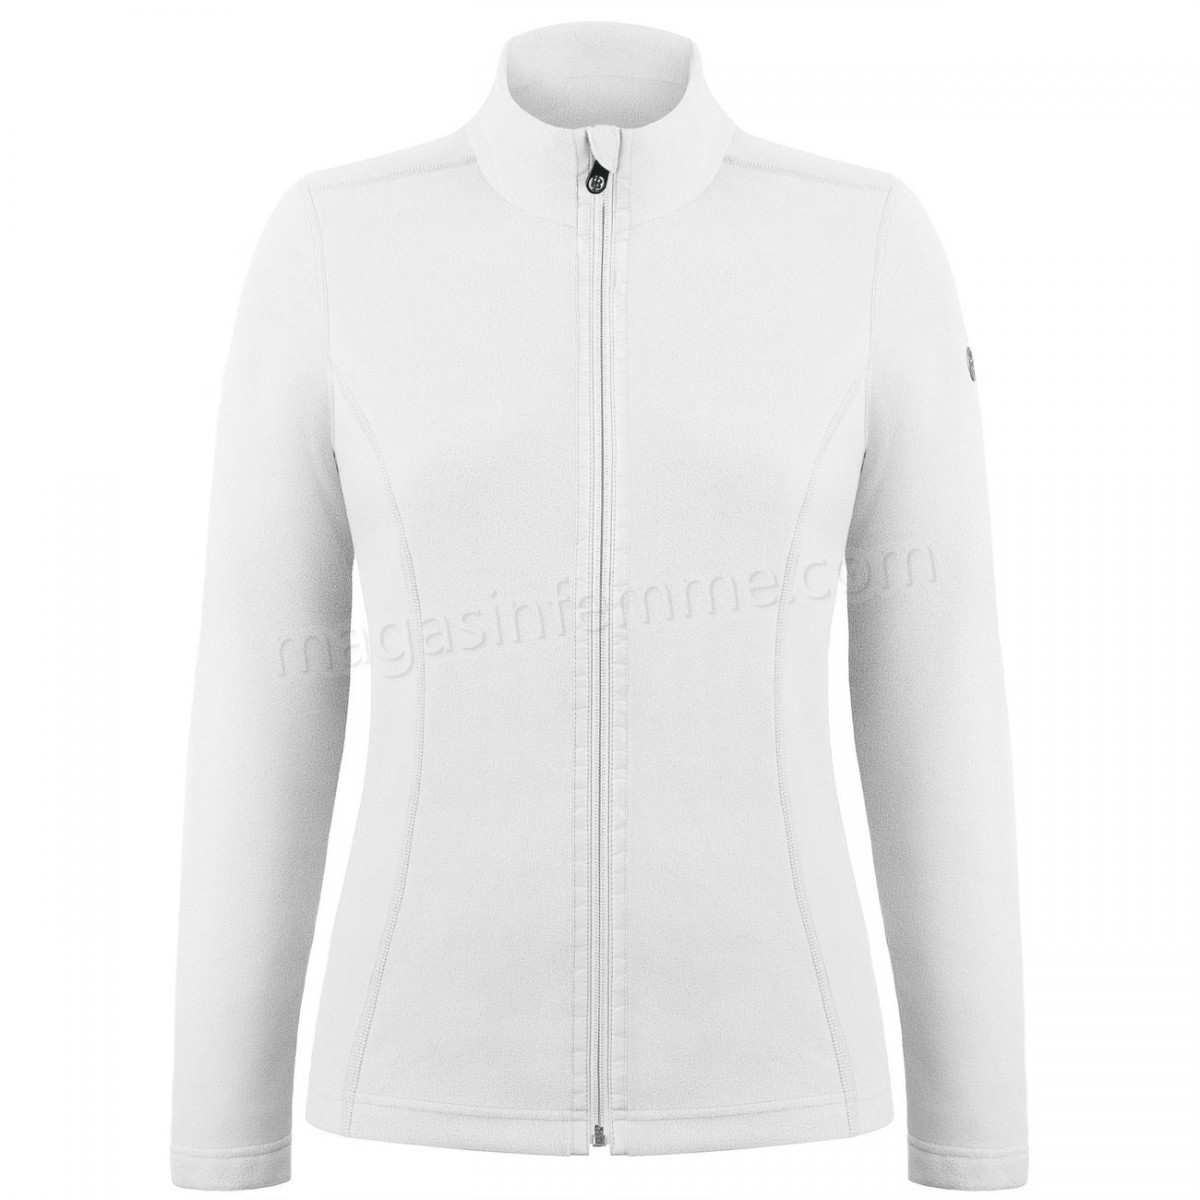 Poivre Blanc-Sports d'hiver femme POIVRE BLANC Veste Polaire Poivre Blanc Fleece Jacket 1500 White Femme en solde - -0